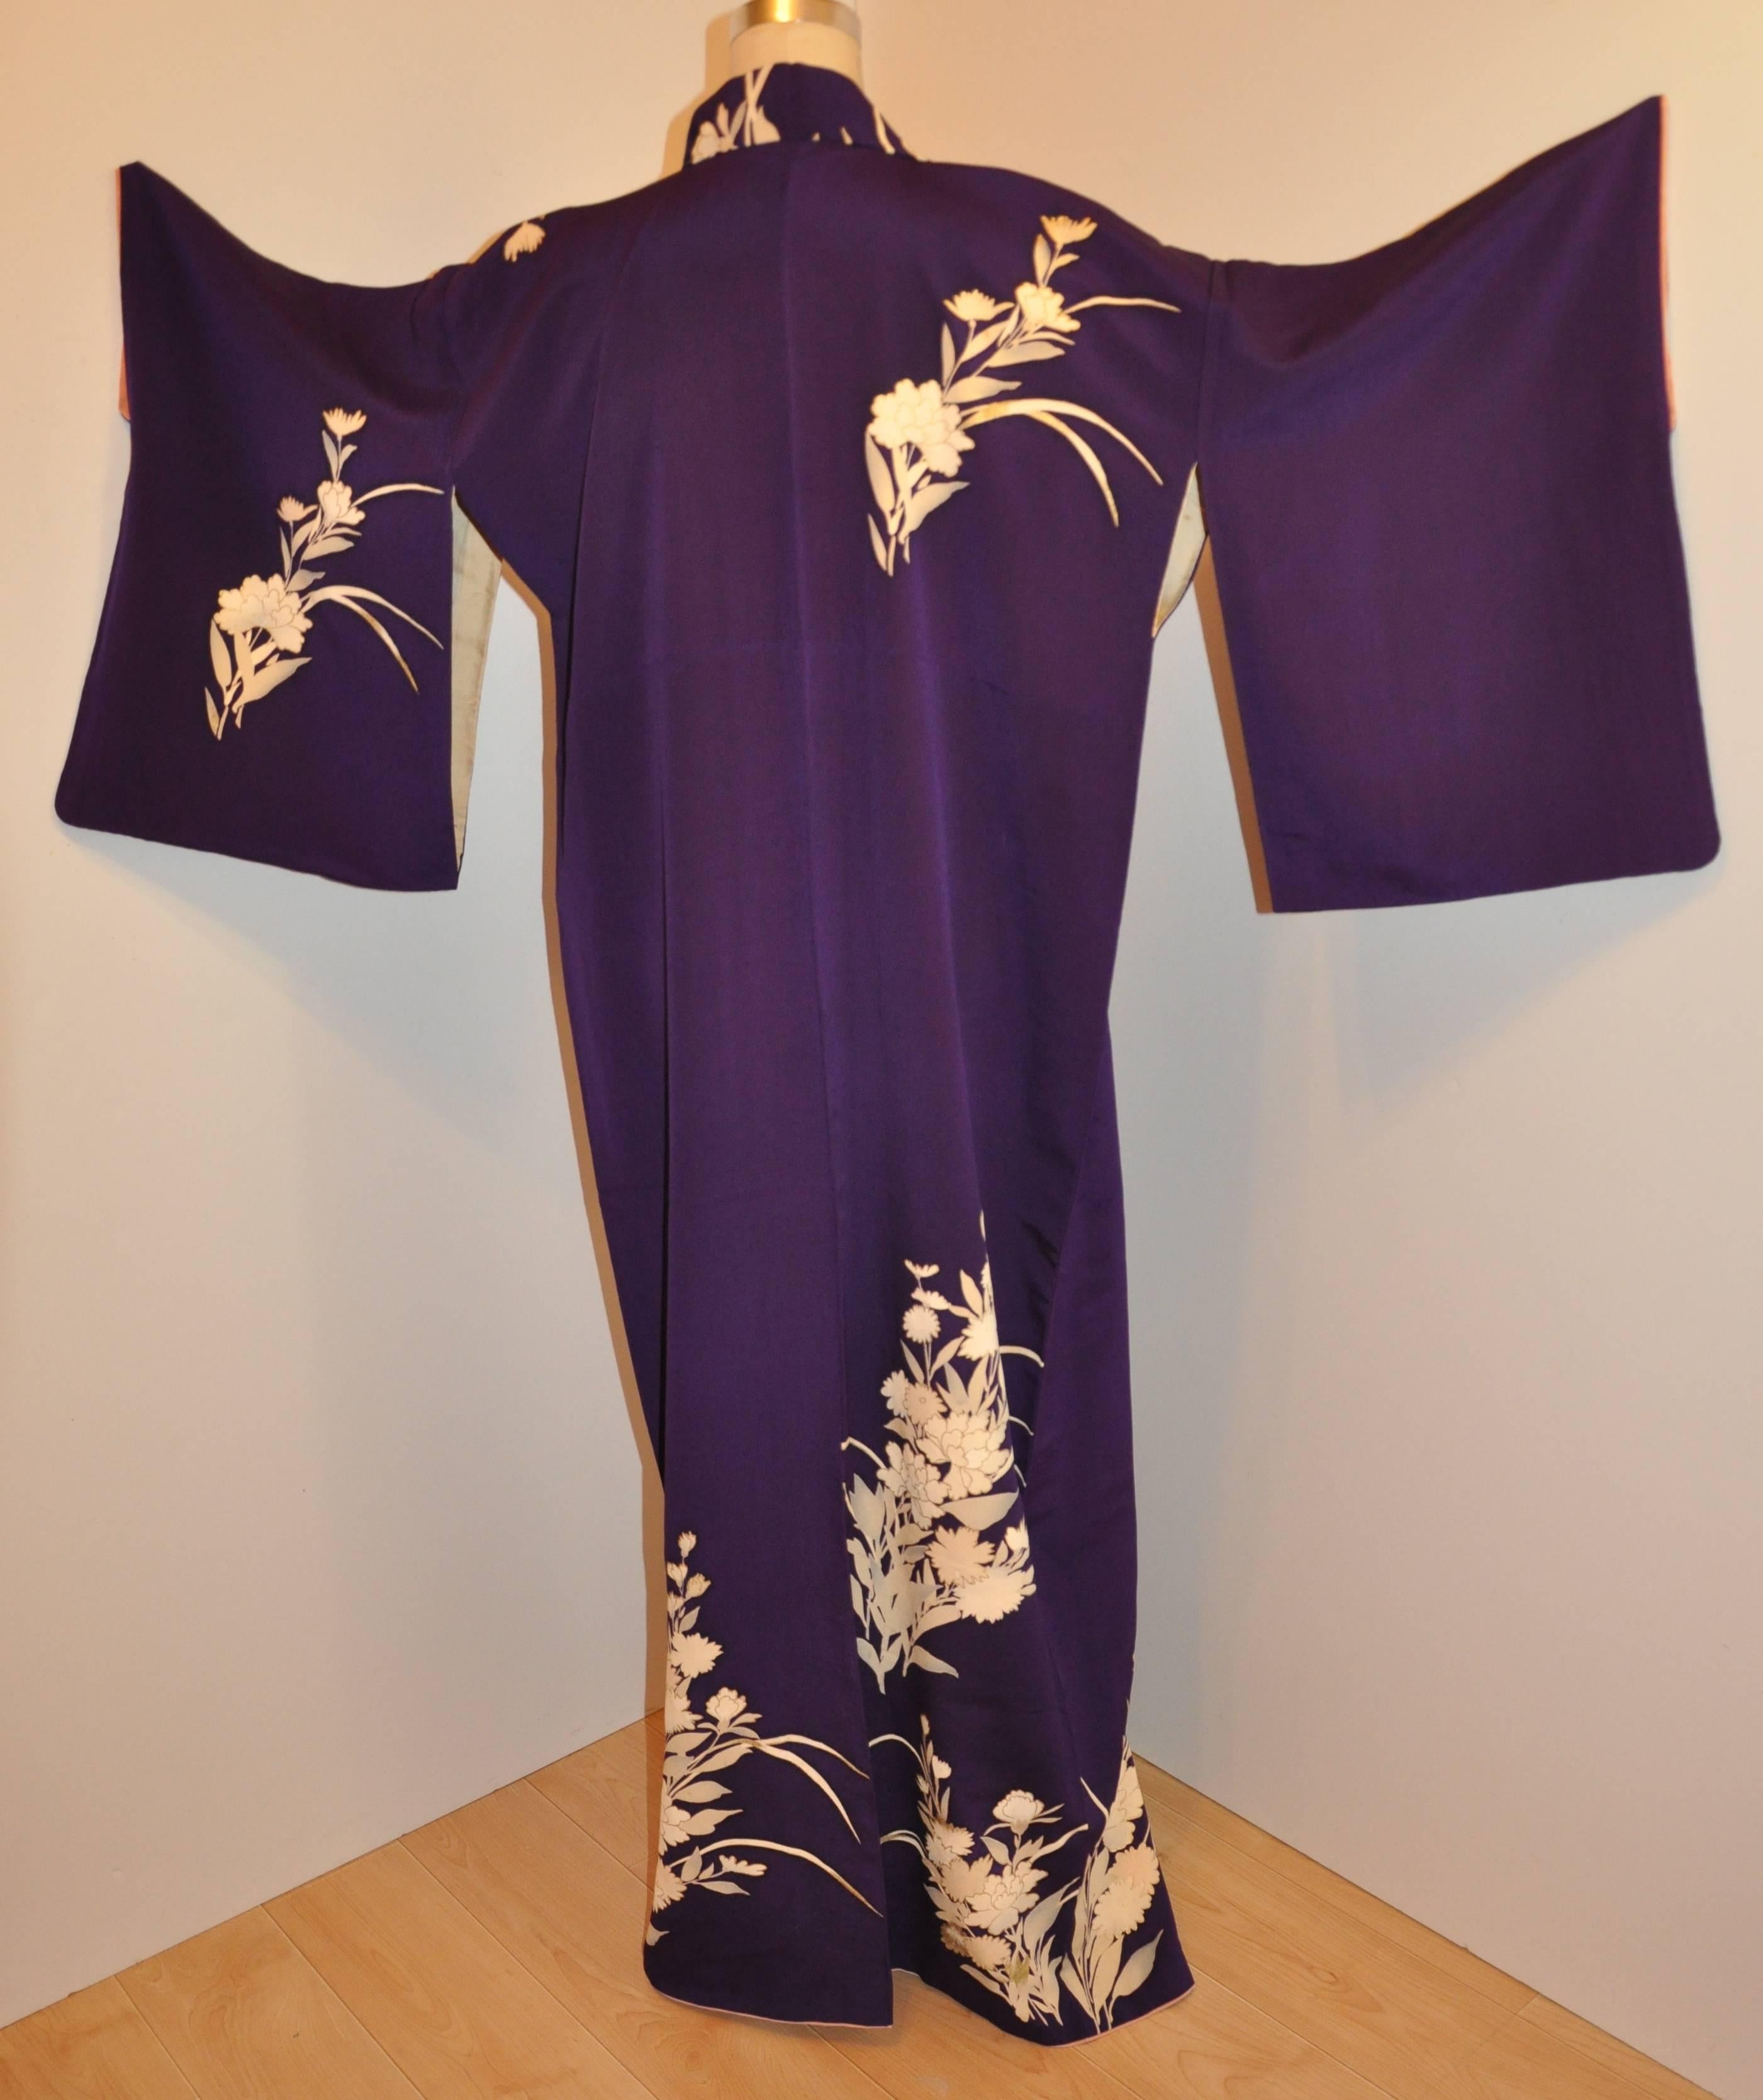        Dieser wundervoll detaillierte violette Seidenkimono ist mit cremefarbenen Blumen verziert und mit einer goldenen Metallic-Ätzung versehen, die einige der Blumen hervorhebt. Die Länge beträgt 59